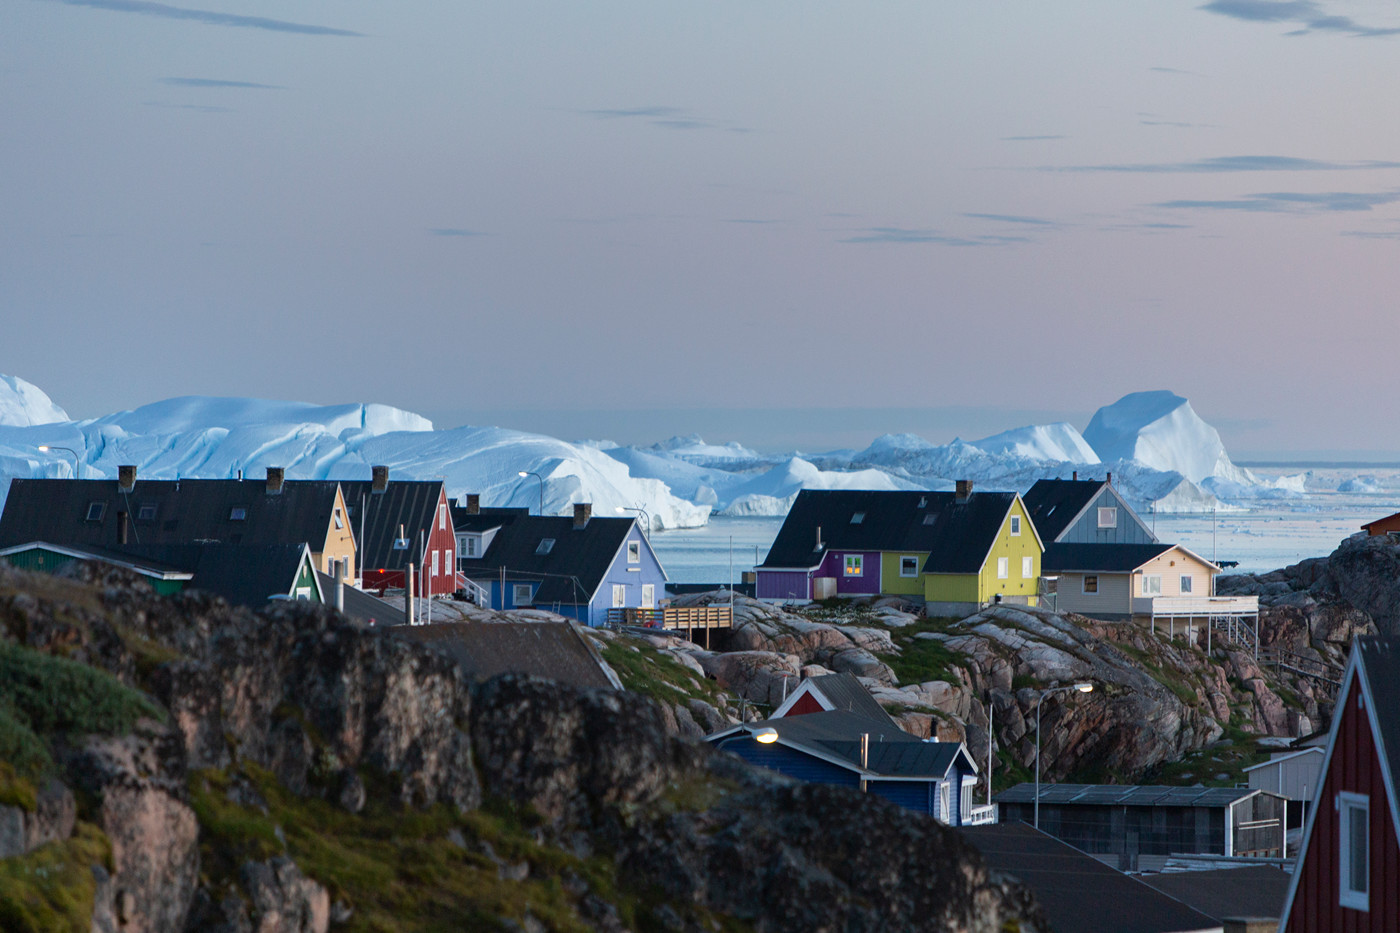 Farverige huse i Grønland med isfjorden i baggrunden.